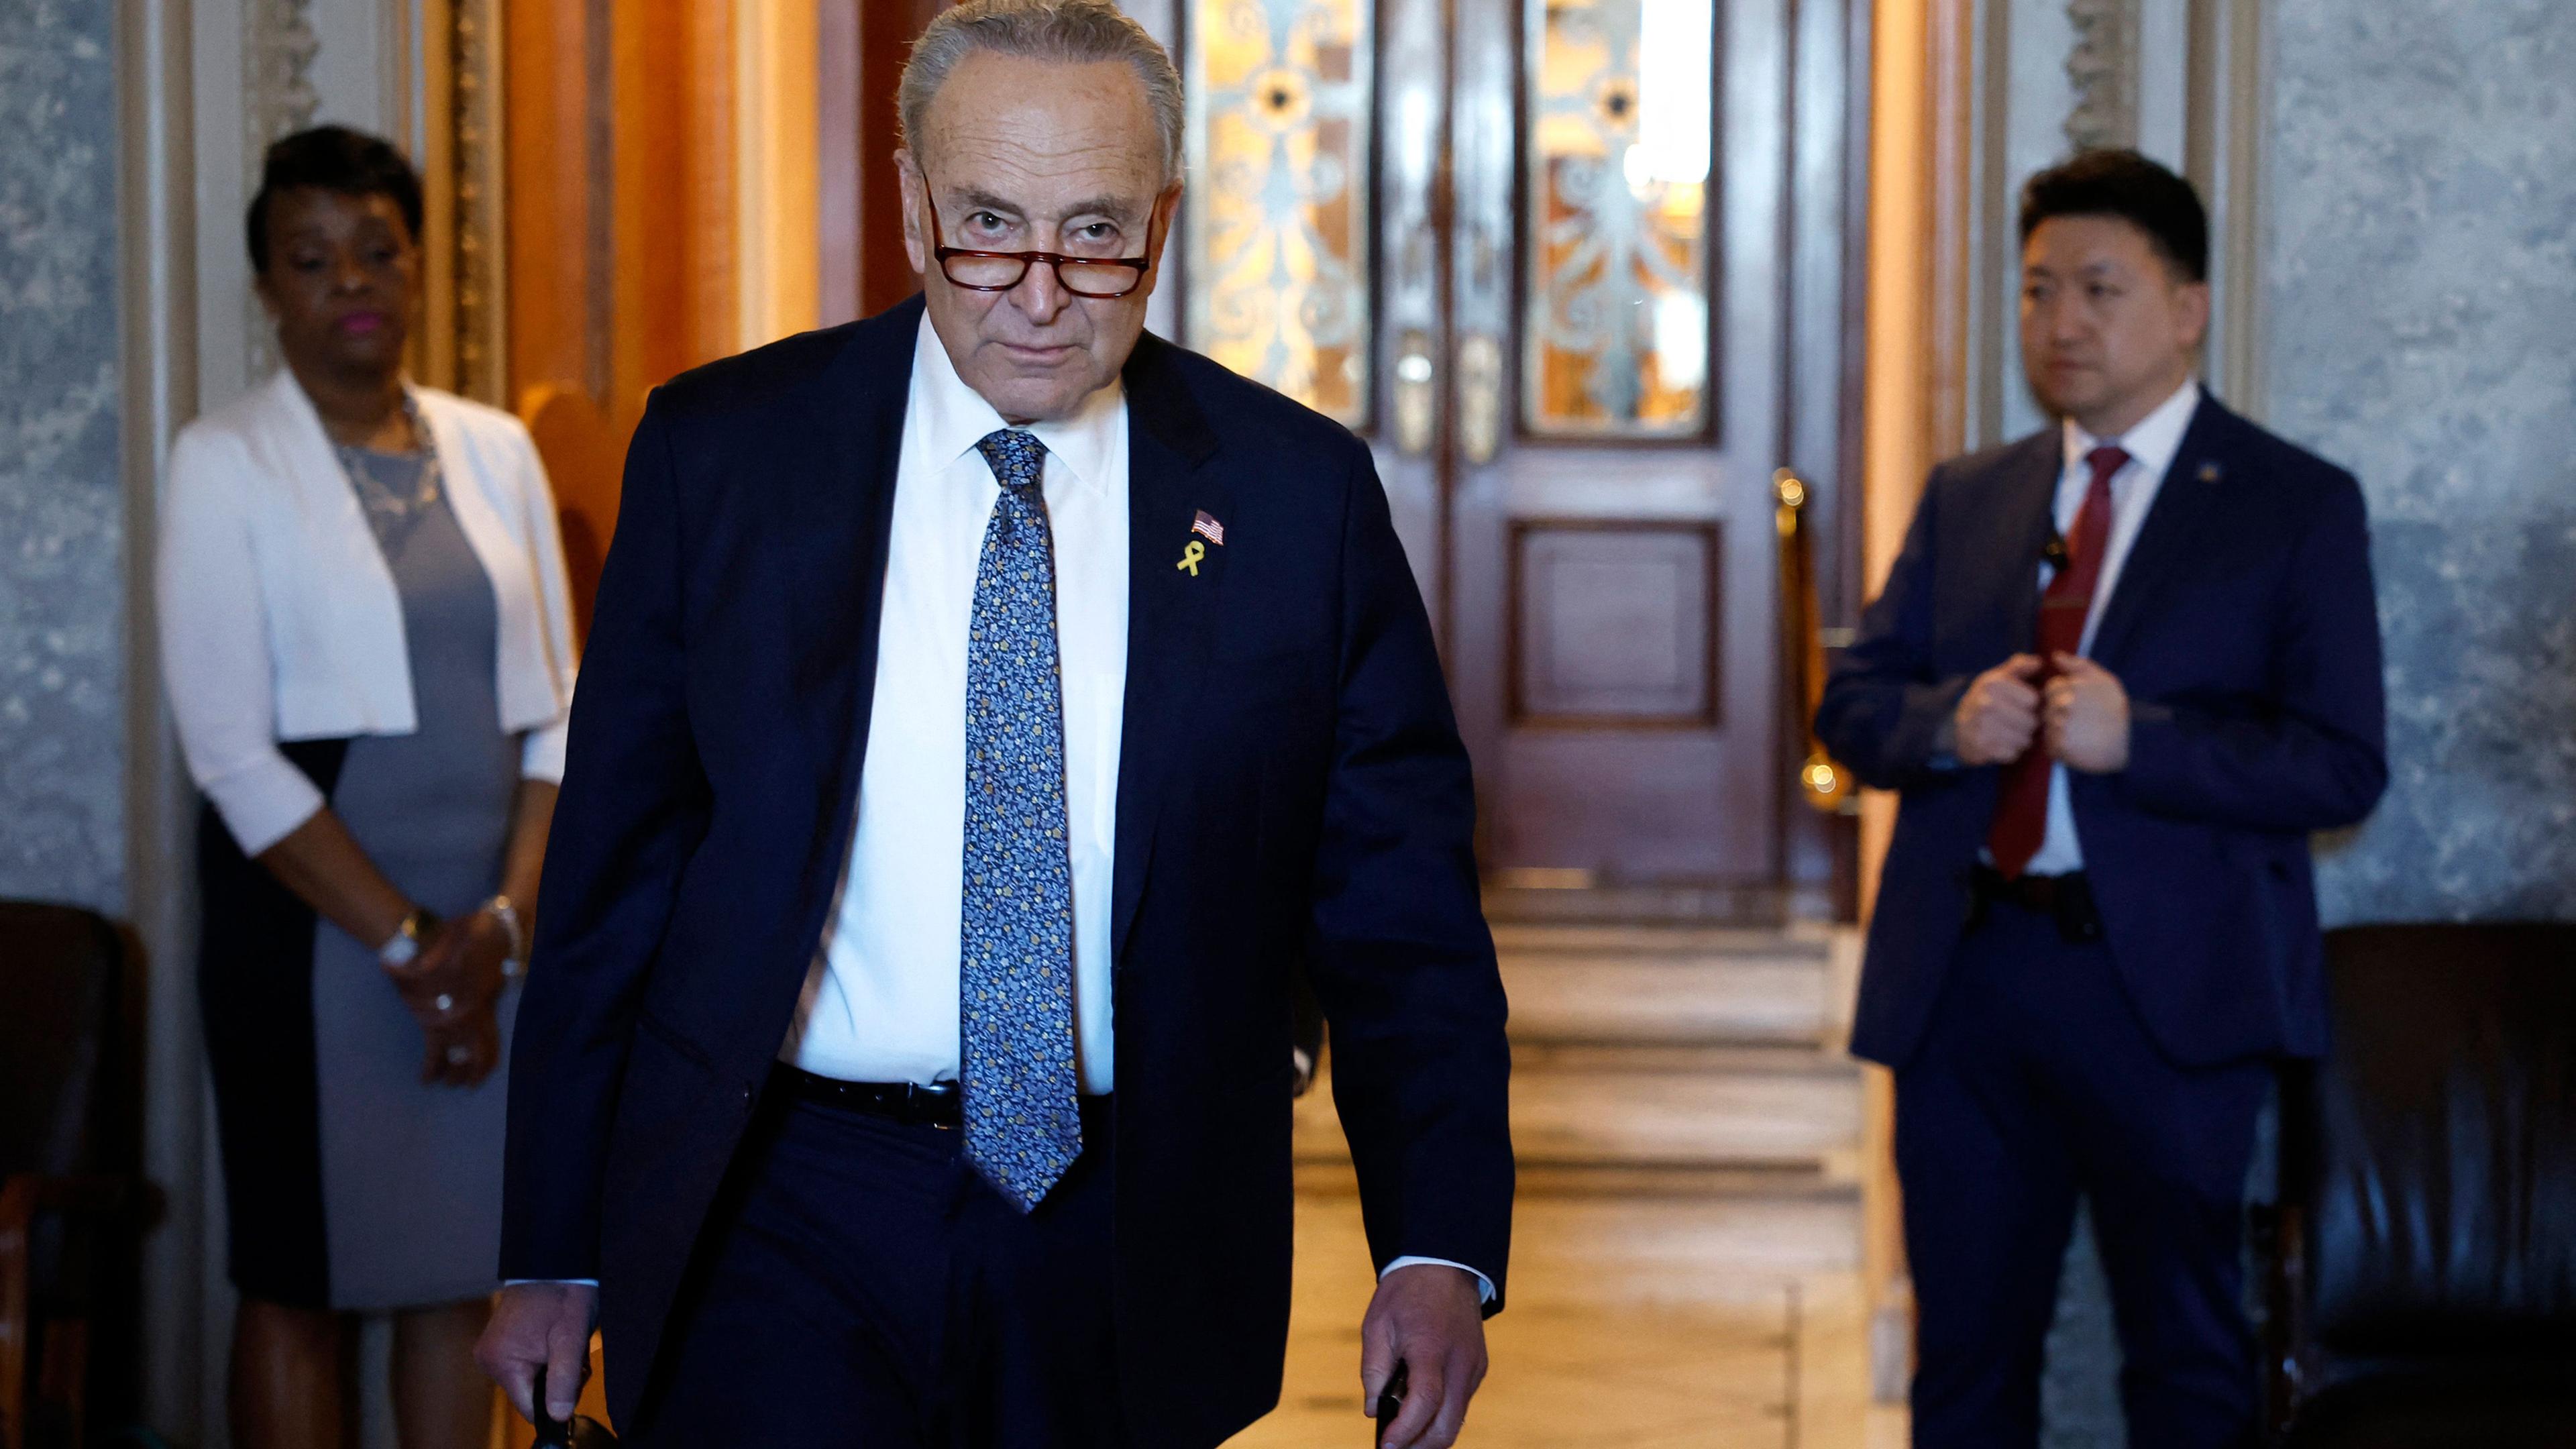 Der US-Senator verlässt den Senatssaal im US-Kongress mit einer Aktentasche in der Hand.